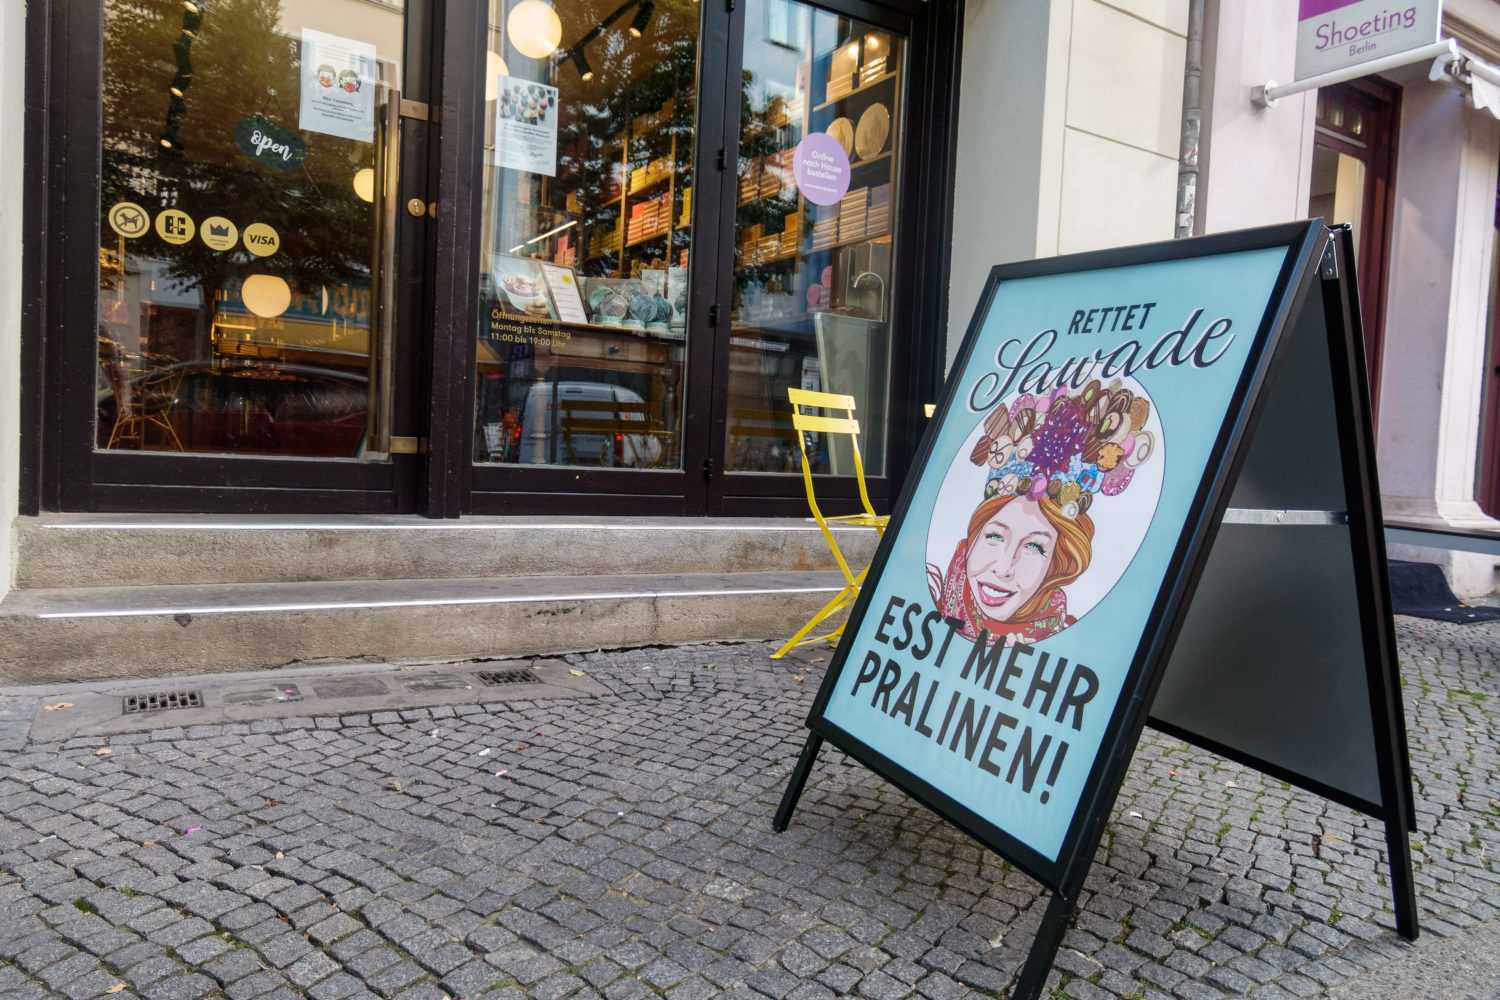 Bergmannstraße Pralinentradition seit 1880: Bei Sawade bekommt ihr feinste Pralinen und Trüffel, zum selber Essen oder verschenken.